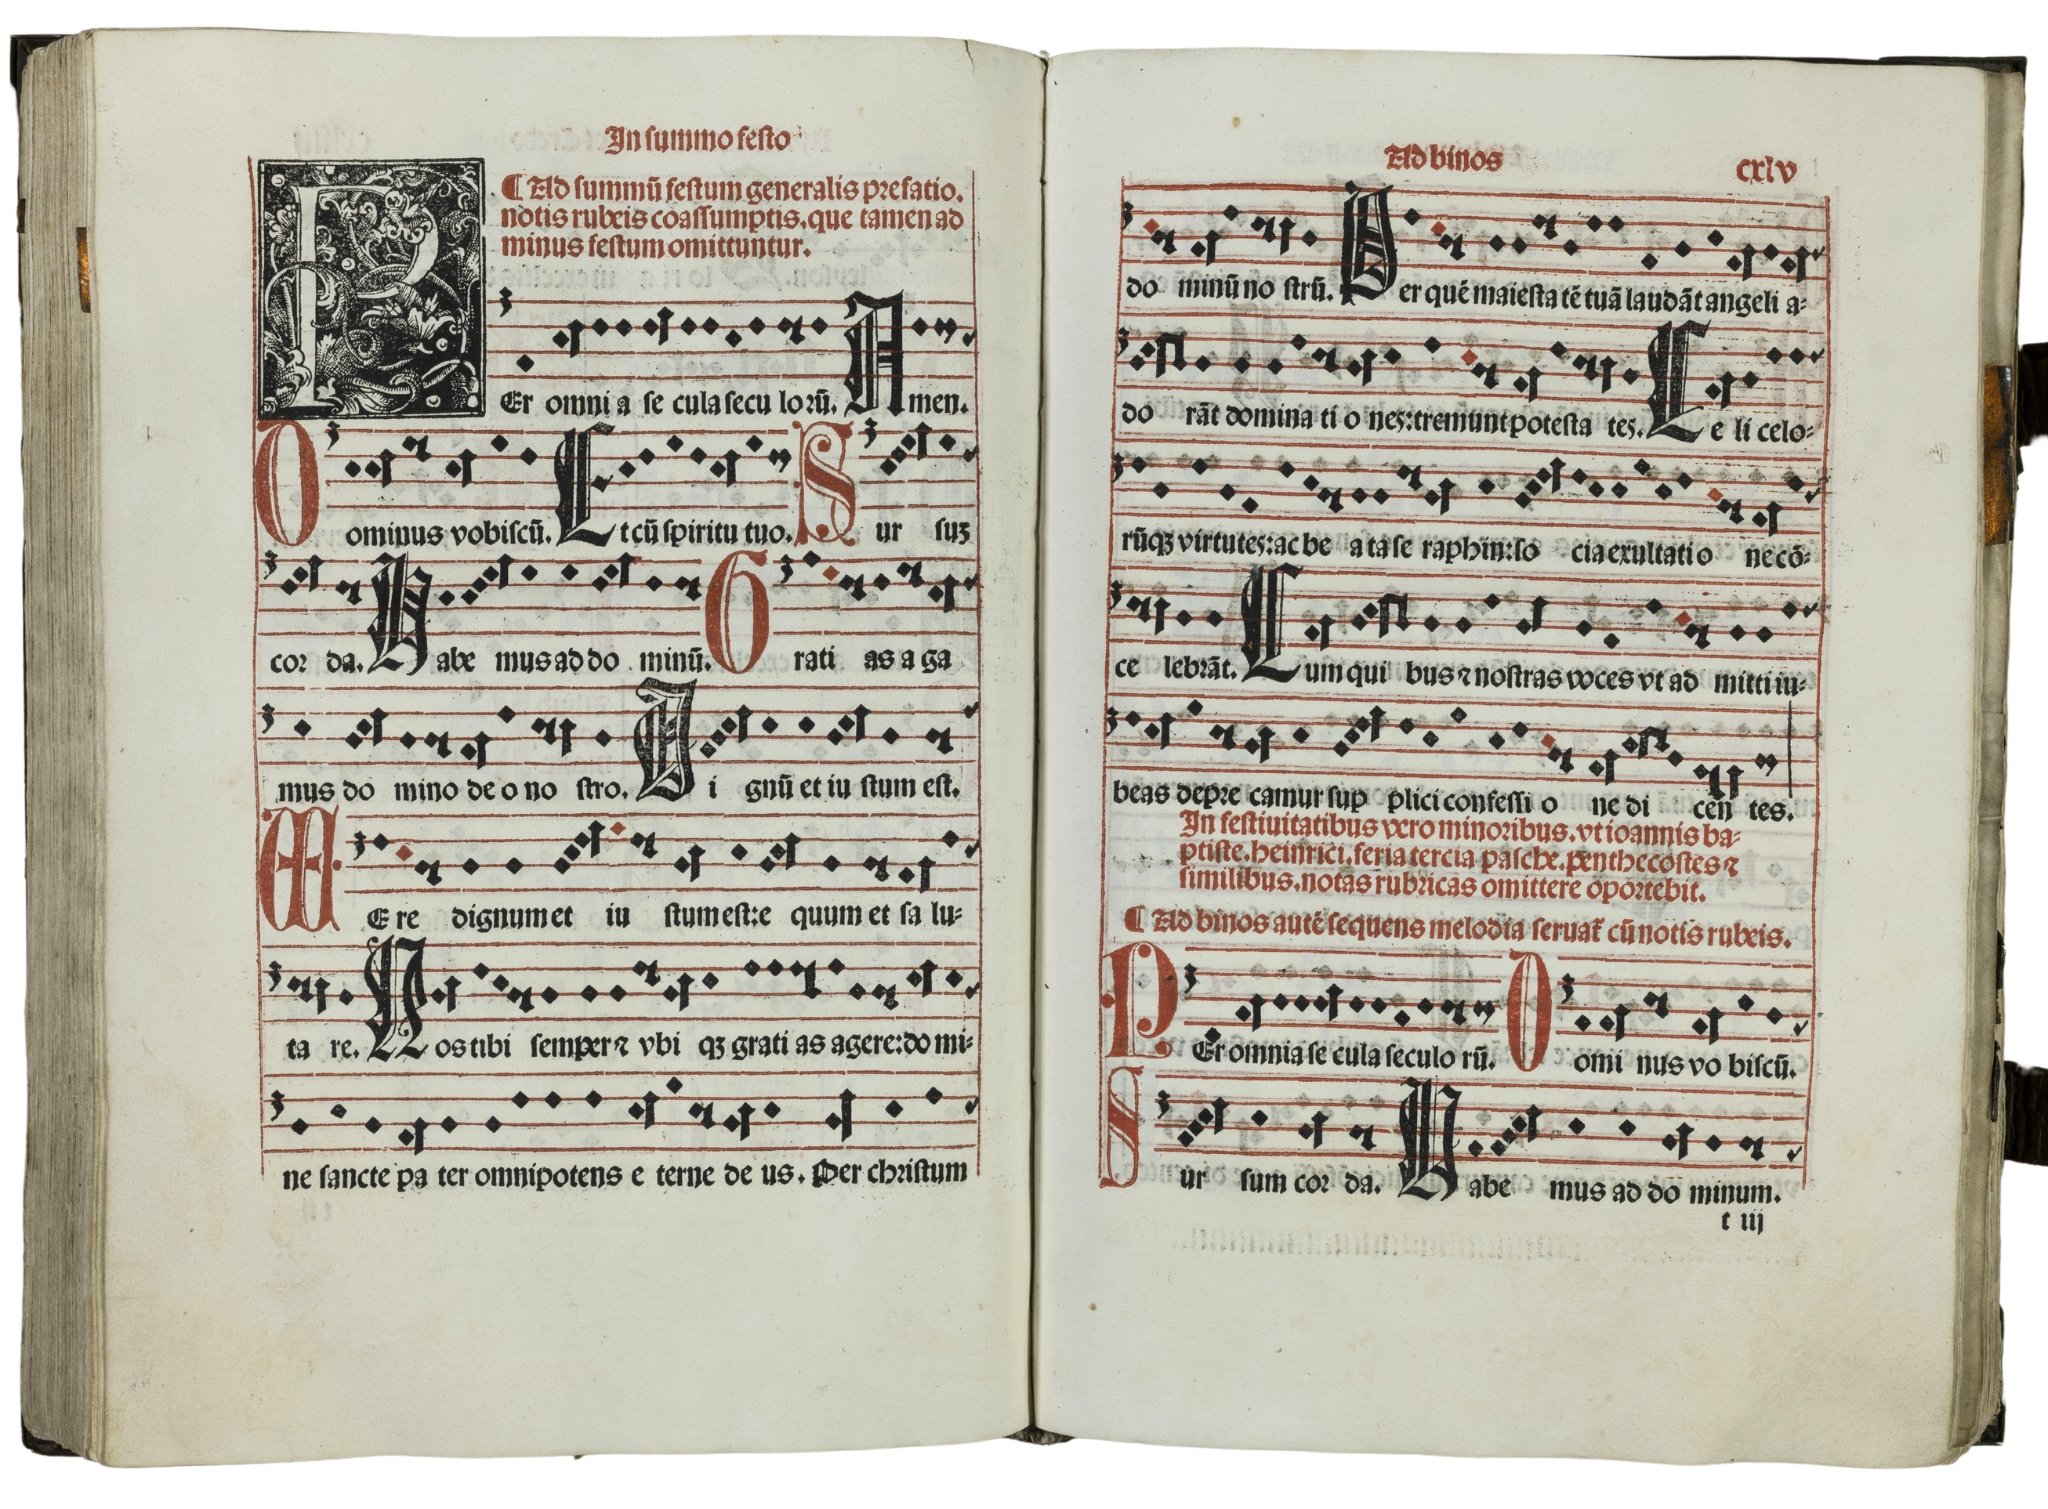 Missale-Saltzeburgense-lucas-cranach-der-aeltere-elder-crucifixion-missel-illuminated-woodcut-1506-4.jpg